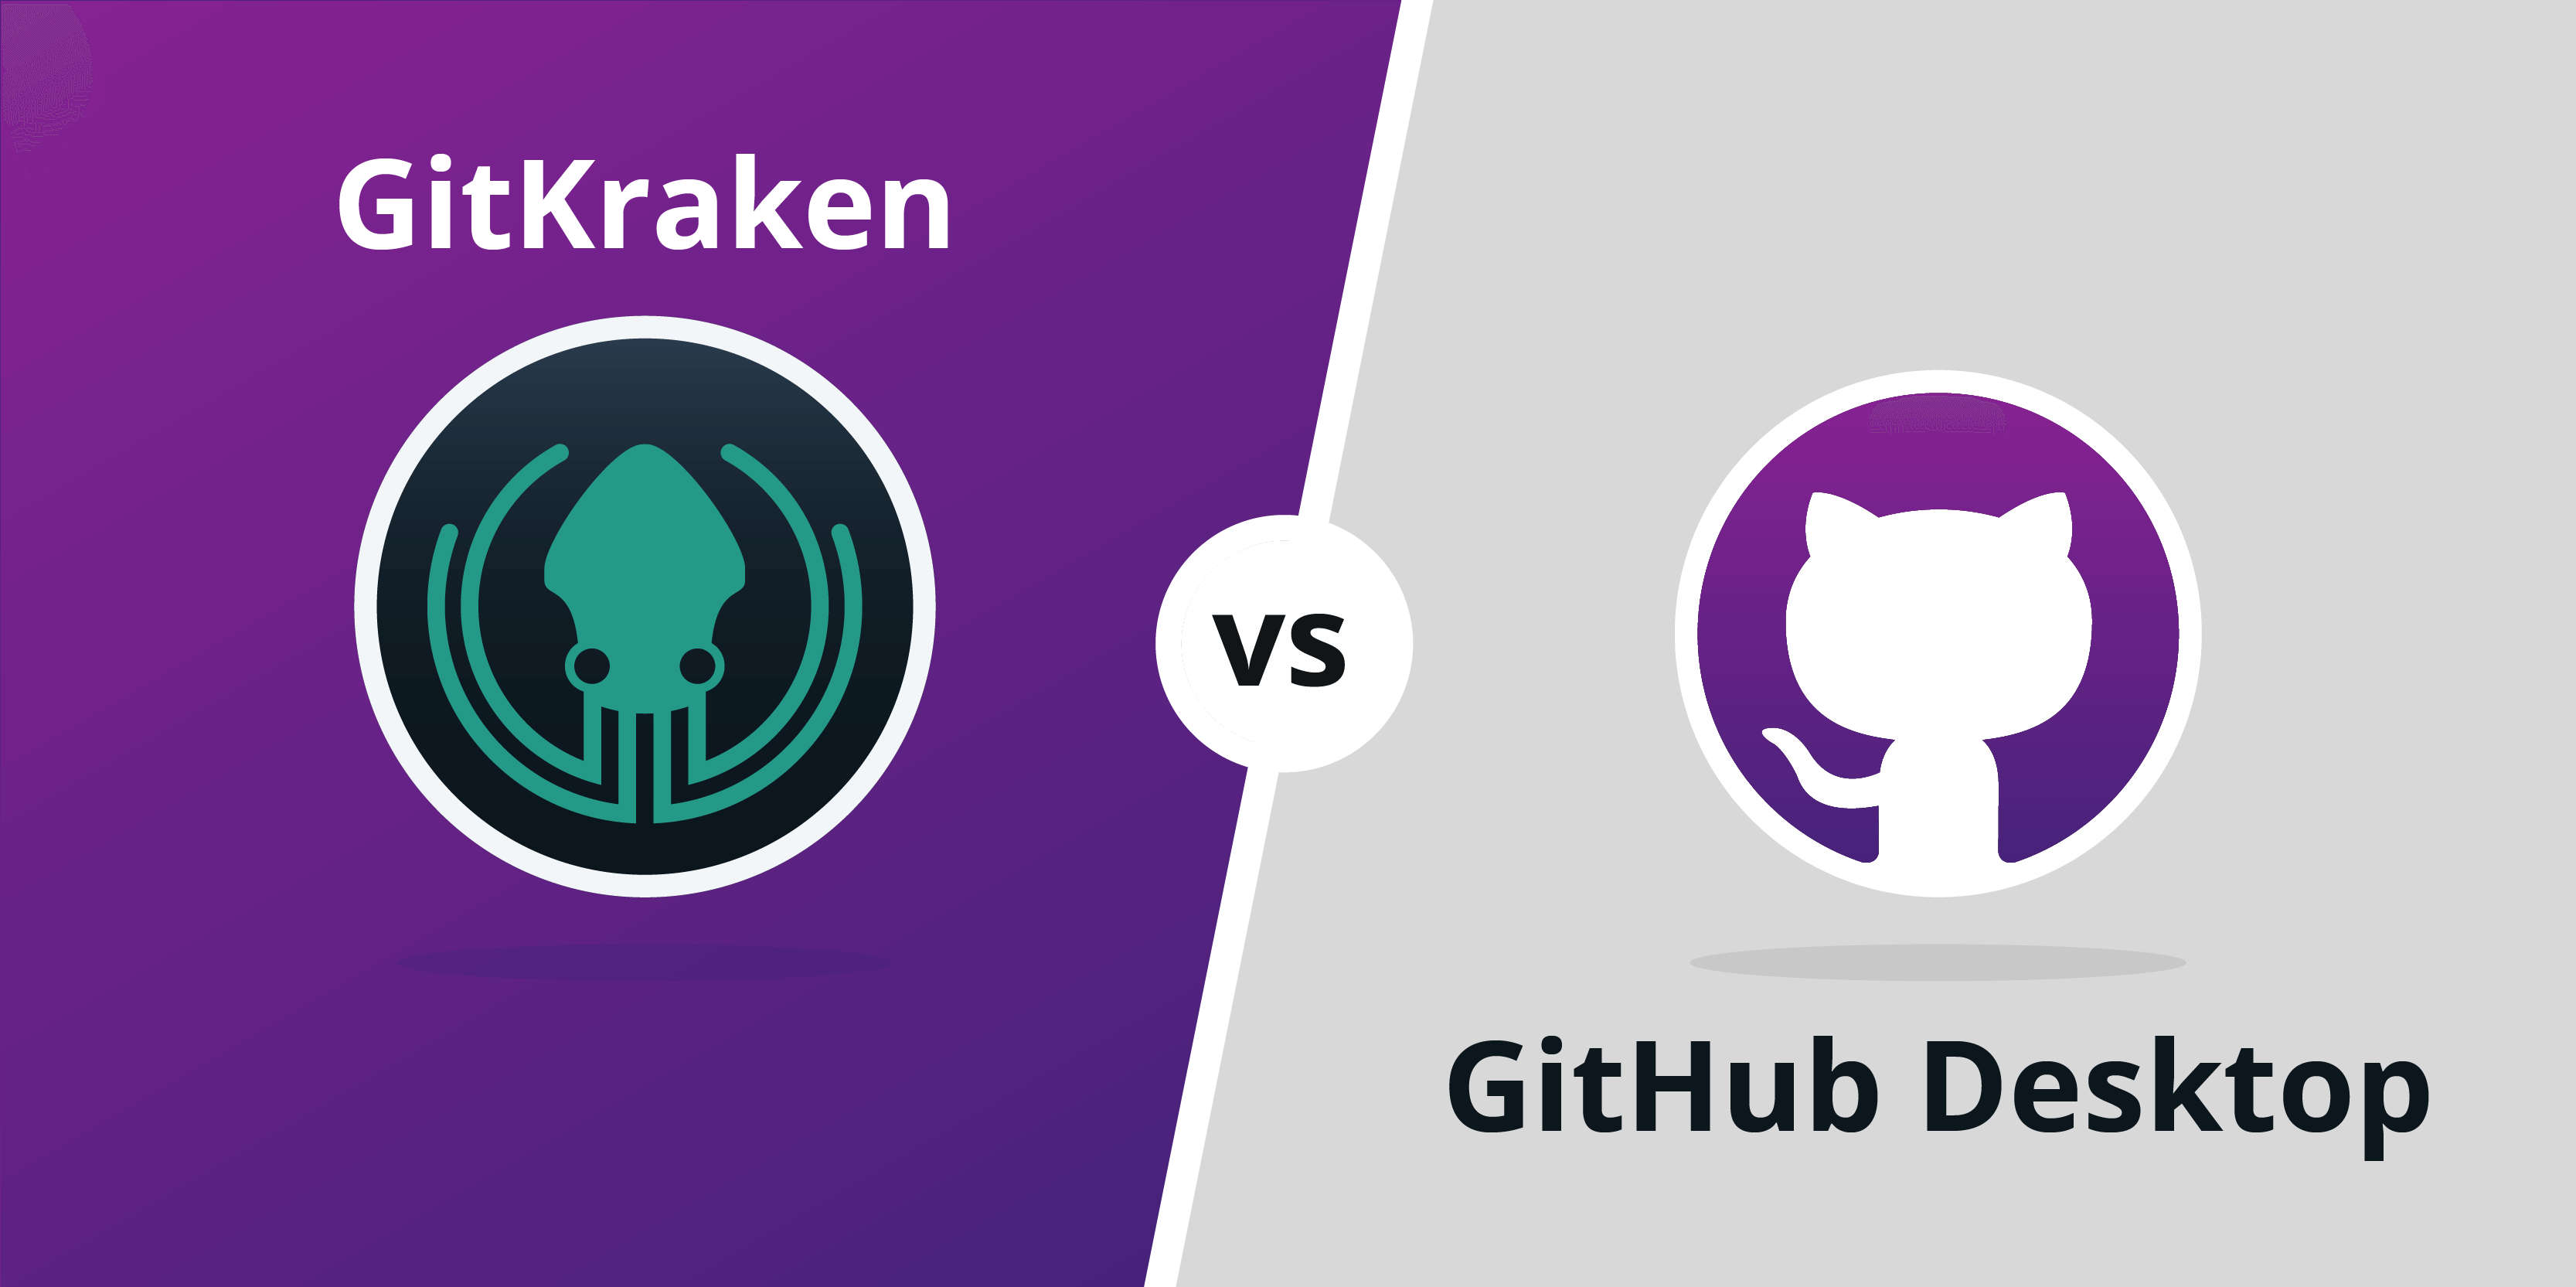 GitKraken vs GitHub Desktop